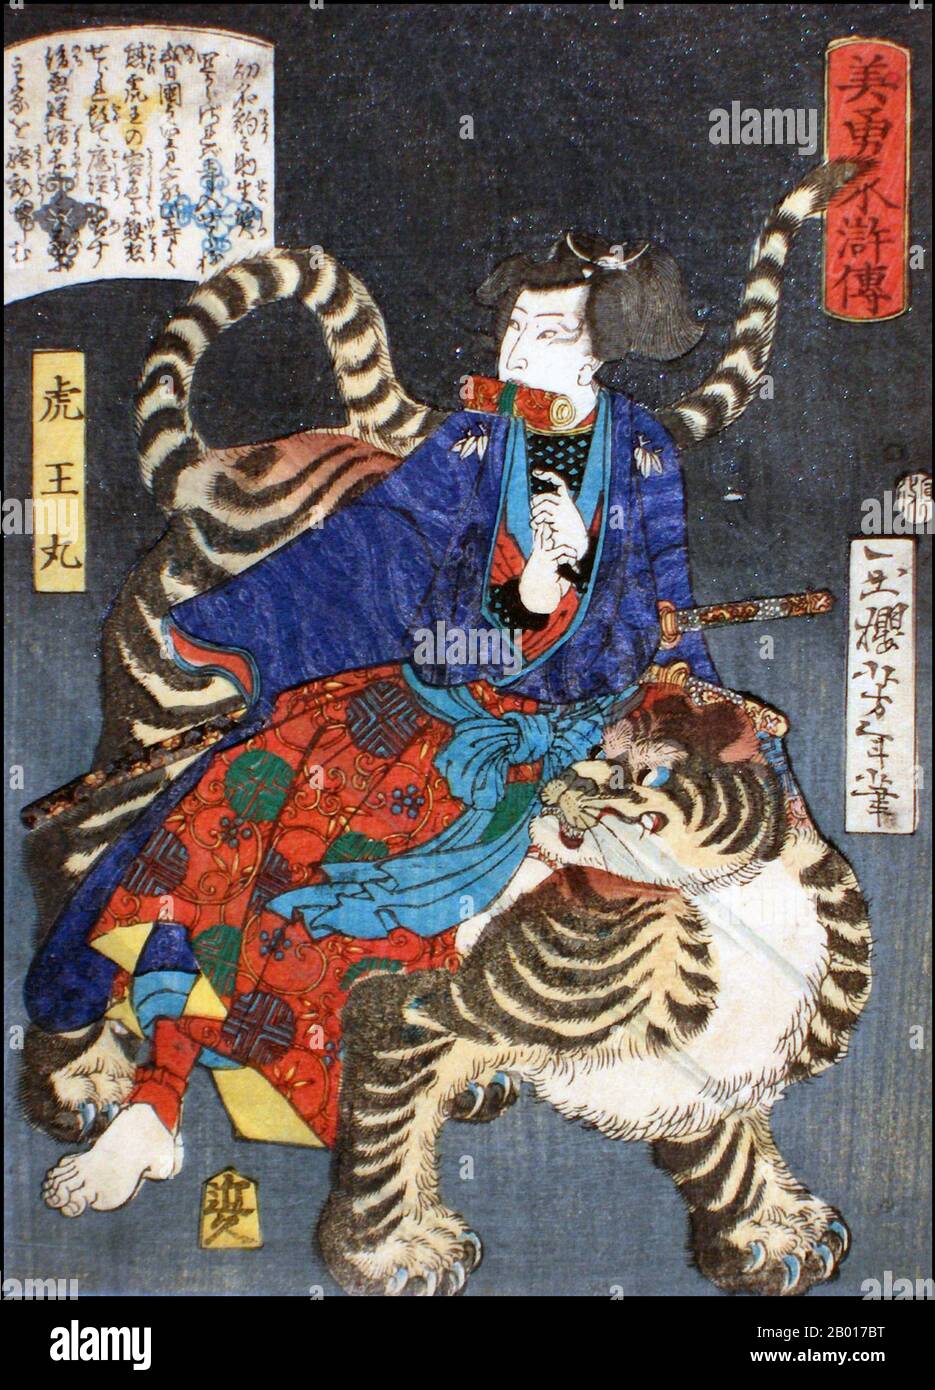 Japon: 'The Leopard Boy Koo Maru (Hyonosuke)'.Imprimé Ukiyo-e de la série 'Heroes of the Water Margin' de Tsukioka Yoshitoshi (1839 - 9 juin 1892), 1866.Tsukioka Yoshitoshi, également appelé Tiso Yoshitoshi, était un artiste japonais.Il est largement reconnu comme le dernier grand maître d'Ukiyo-e, un type d'impression de blocs de bois japonais.Il est également considéré comme l'un des plus grands innovateurs de la forme.Sa carrière s'est étendue à deux époques : les dernières années du Japon féodal et les premières années du Japon moderne après la restauration de Meiji. Banque D'Images